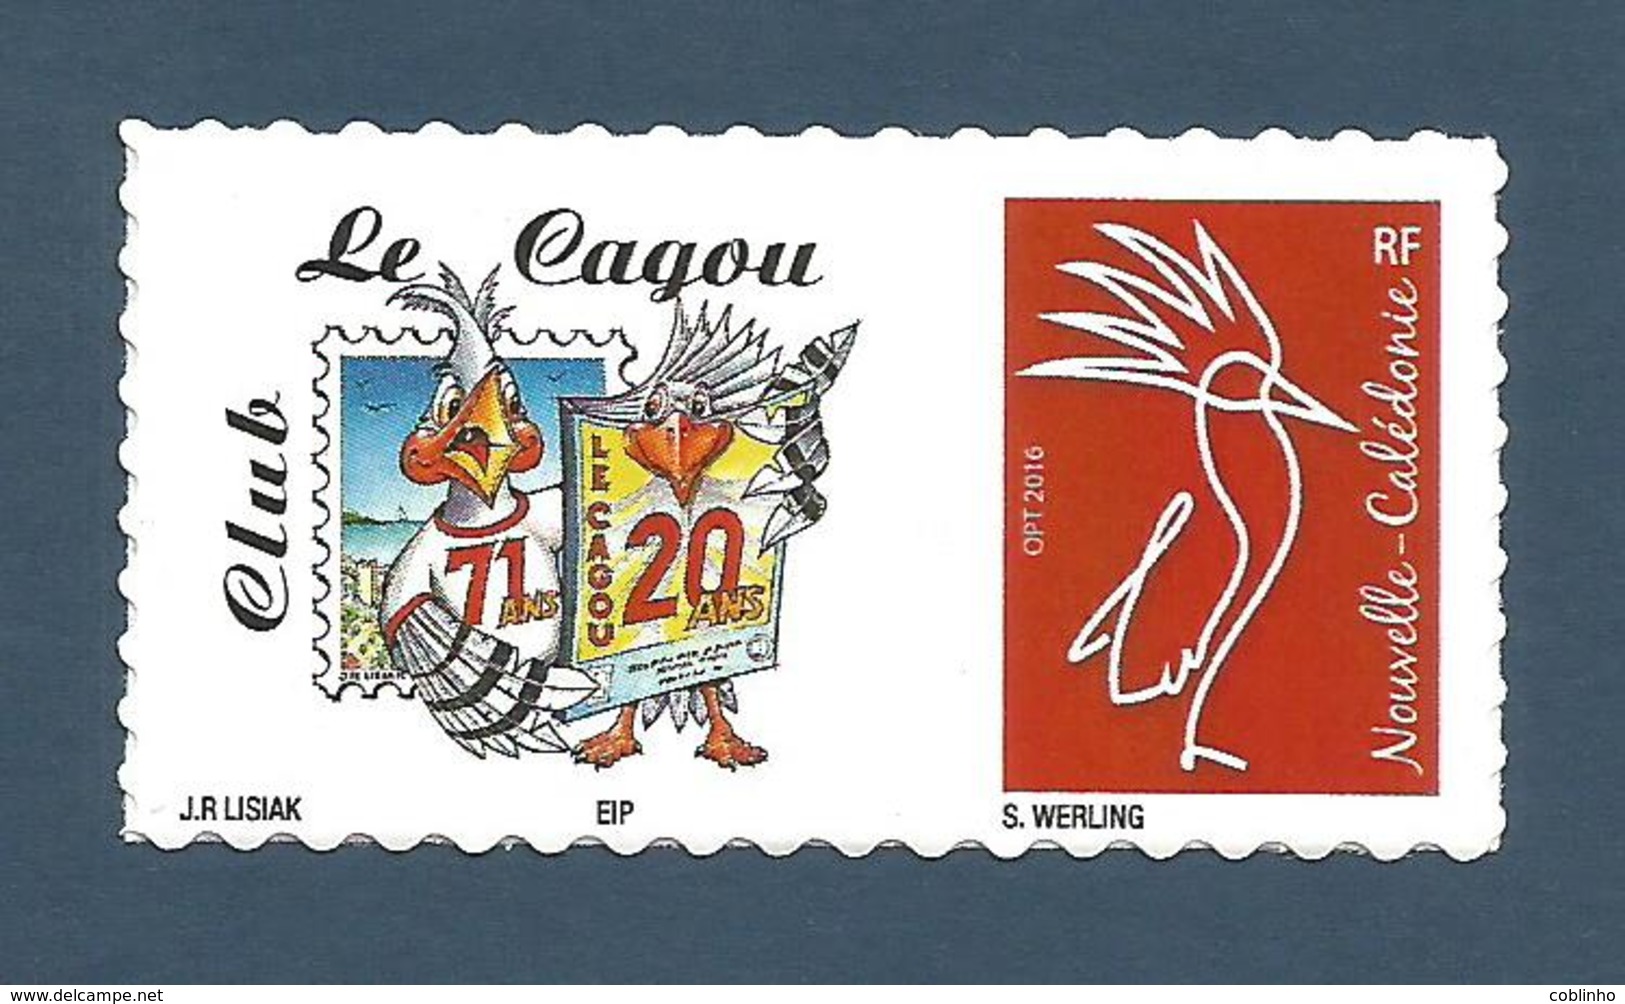 NOUVELLE CALEDONIE (New Caledonia)- RARE Timbre Personnalisé - 20ème Anniversaire De La Revue Le Cagou - 2018 - Unused Stamps